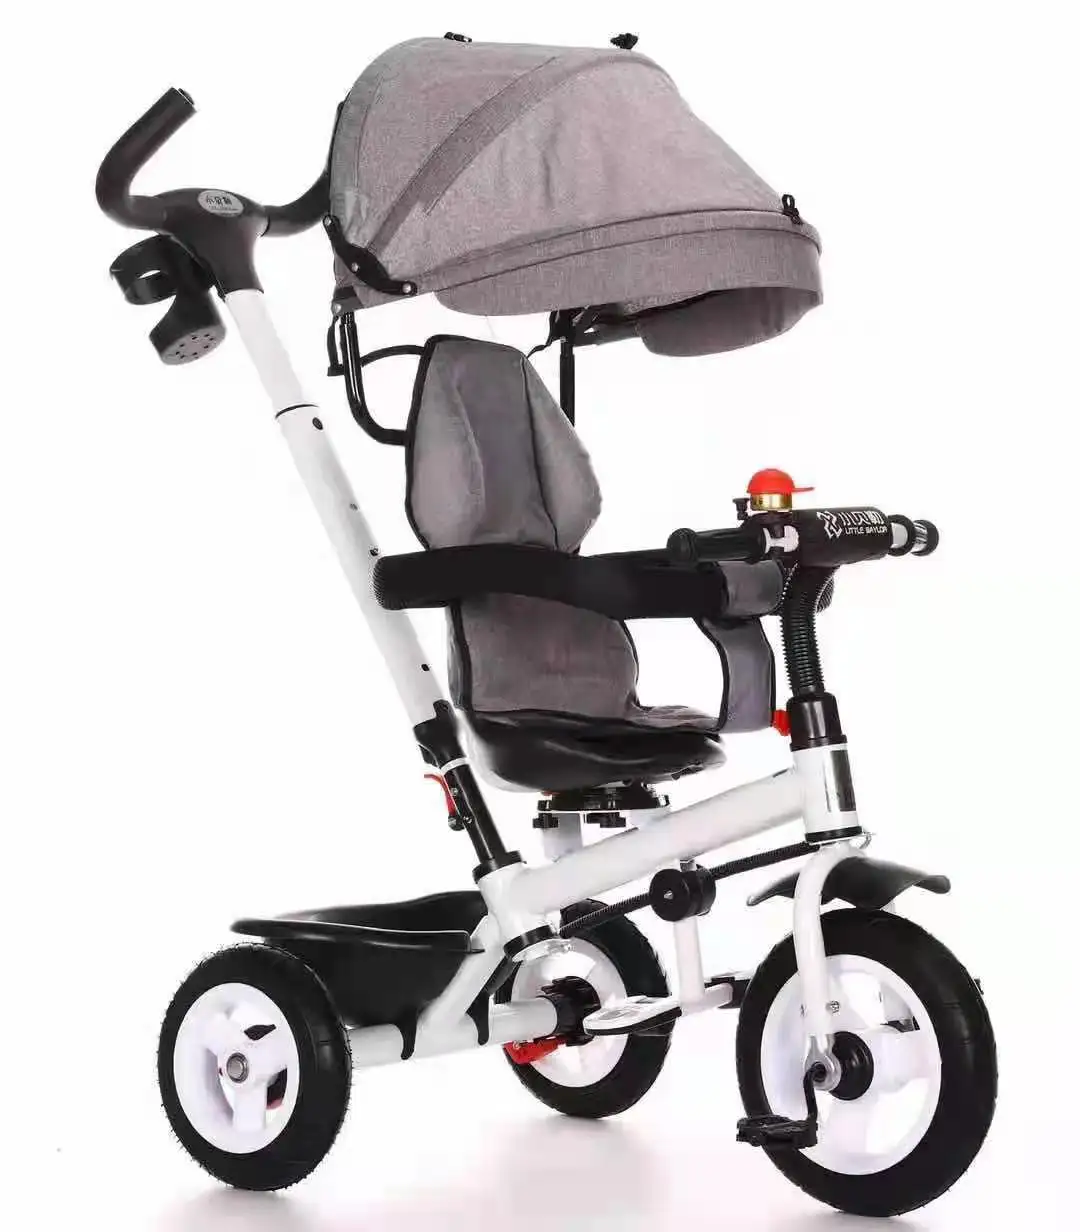 Мульти-функциональный детский защитную плёнку 3 колеса стальные детский трехколесный велосипед/велосипед трехколесный детский велосипед/автомобиль детский трехколесный велосипед